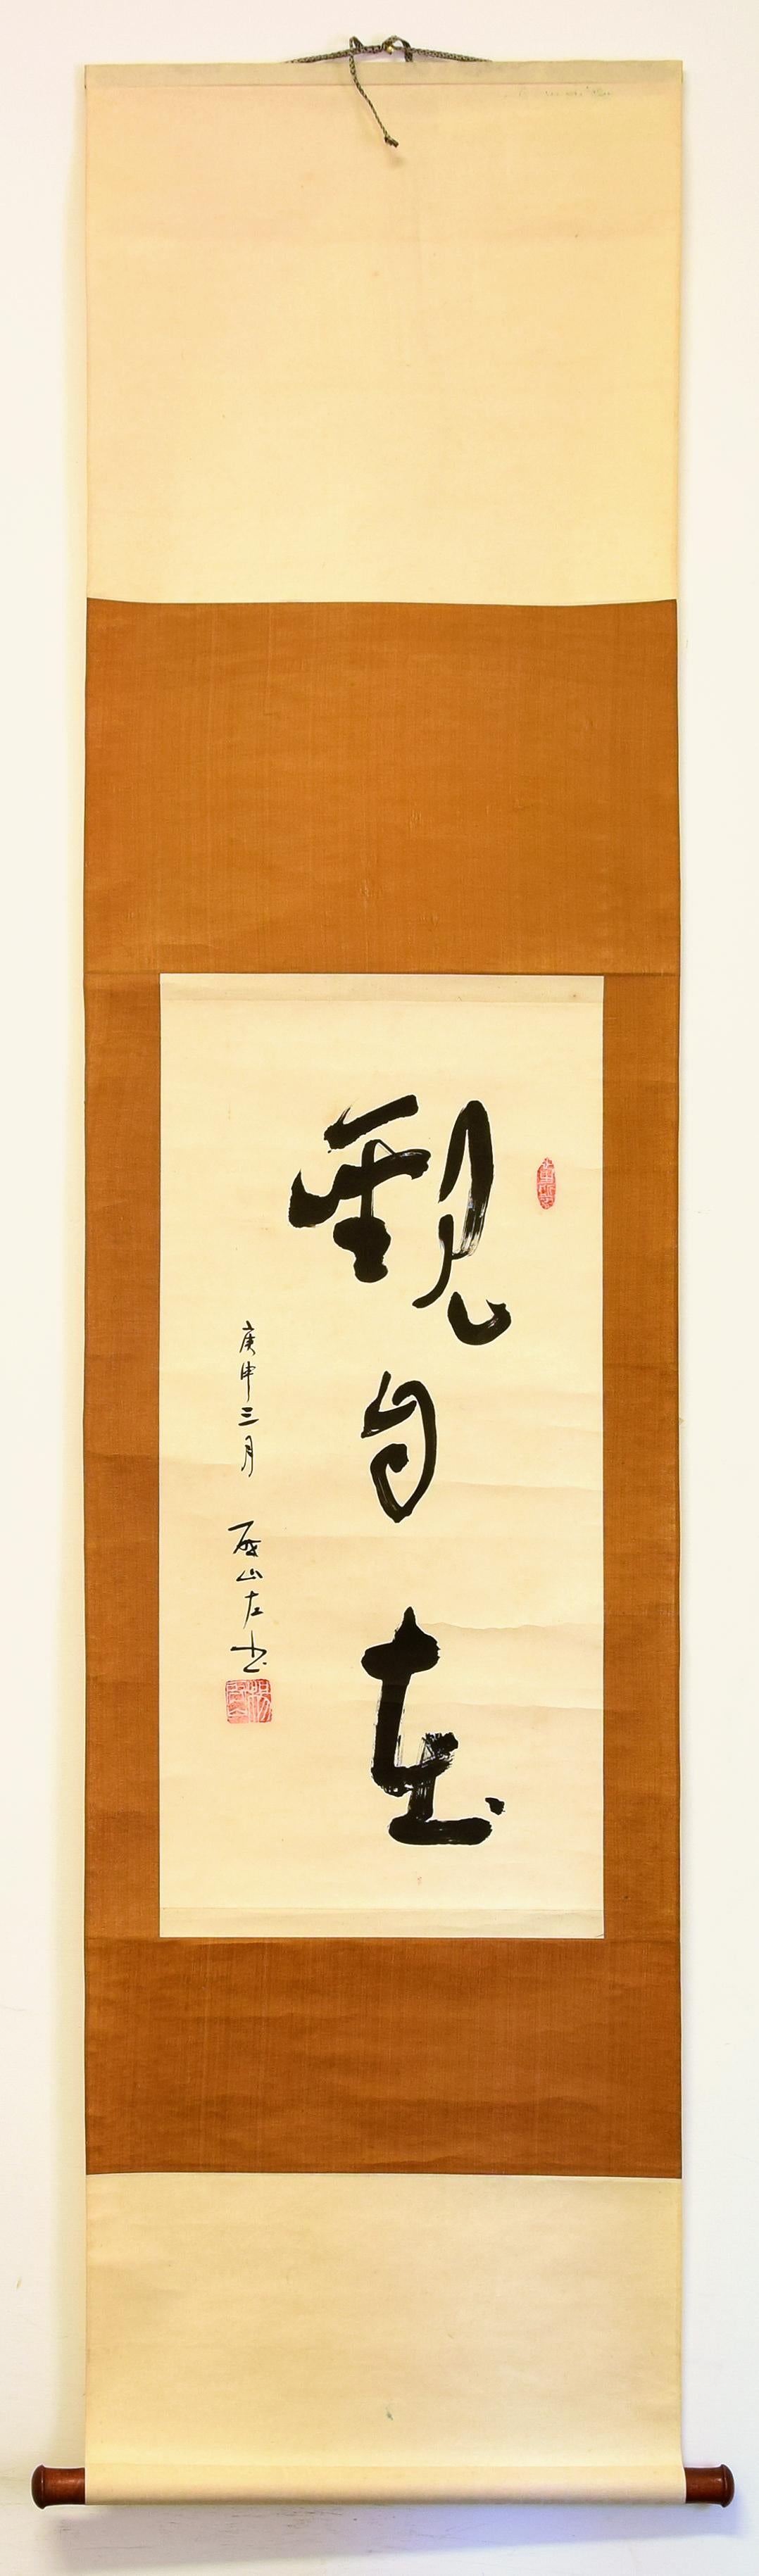 Guan Zi Zai est une belle calligraphie artistique à l'encre de Chine sur papier Xuan réalisée par l'artiste chinois Sheng Zuoshan en mars 1920.

La signature de l'artiste apparaît en bas à gauche à l'encre noire.

Il s'agit d'une pièce unique,